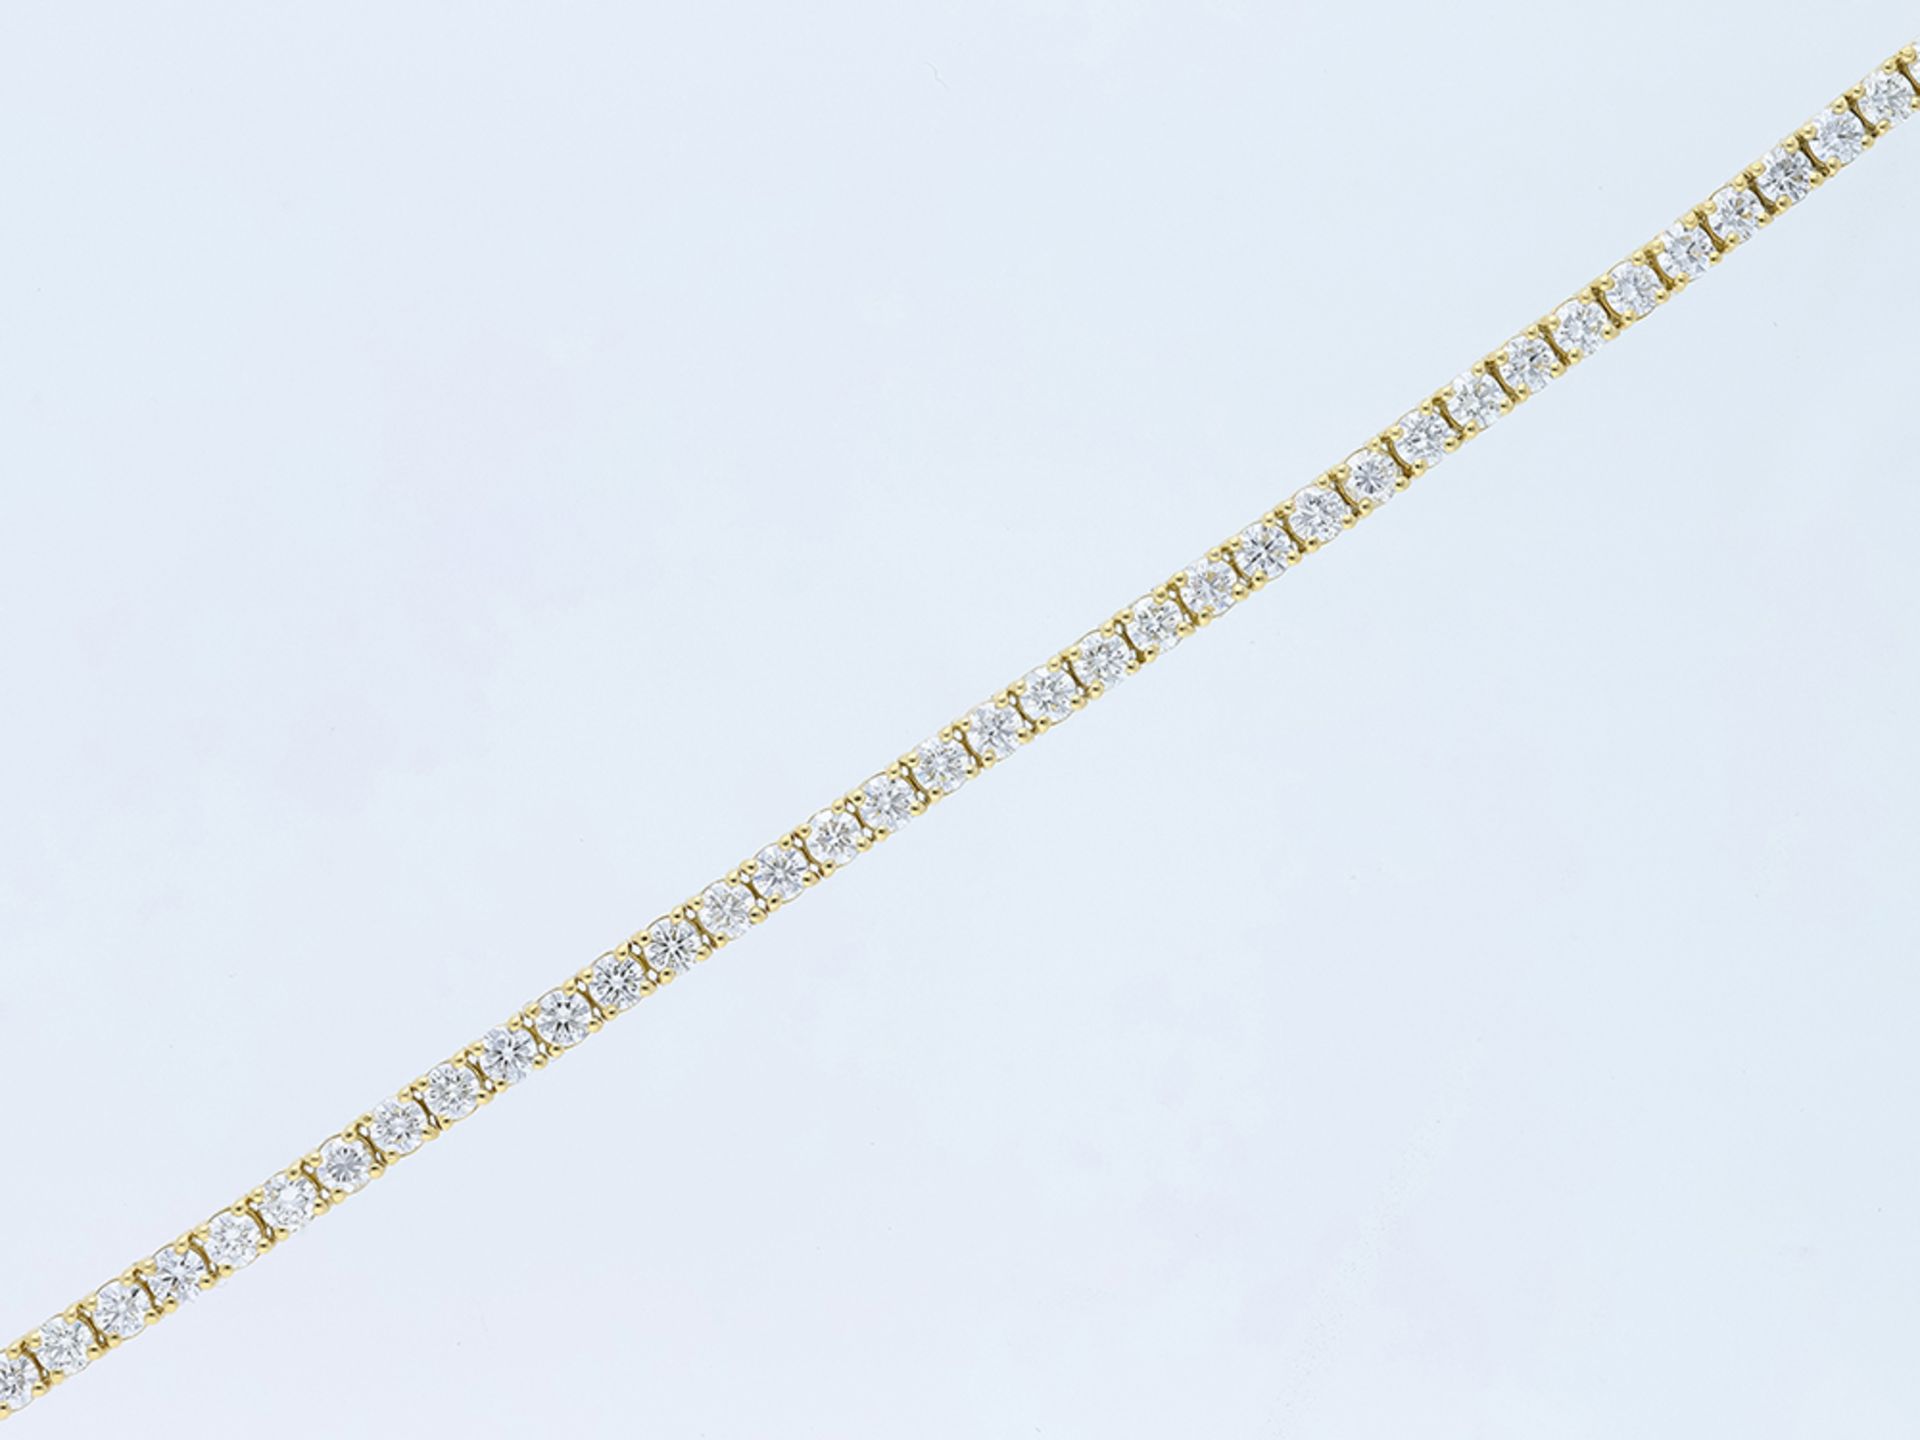 Armband mit 4,35 Karat Diamanten in 750 / 18 Karat Gelbgold mit HRD Expertise - Bild 3 aus 6